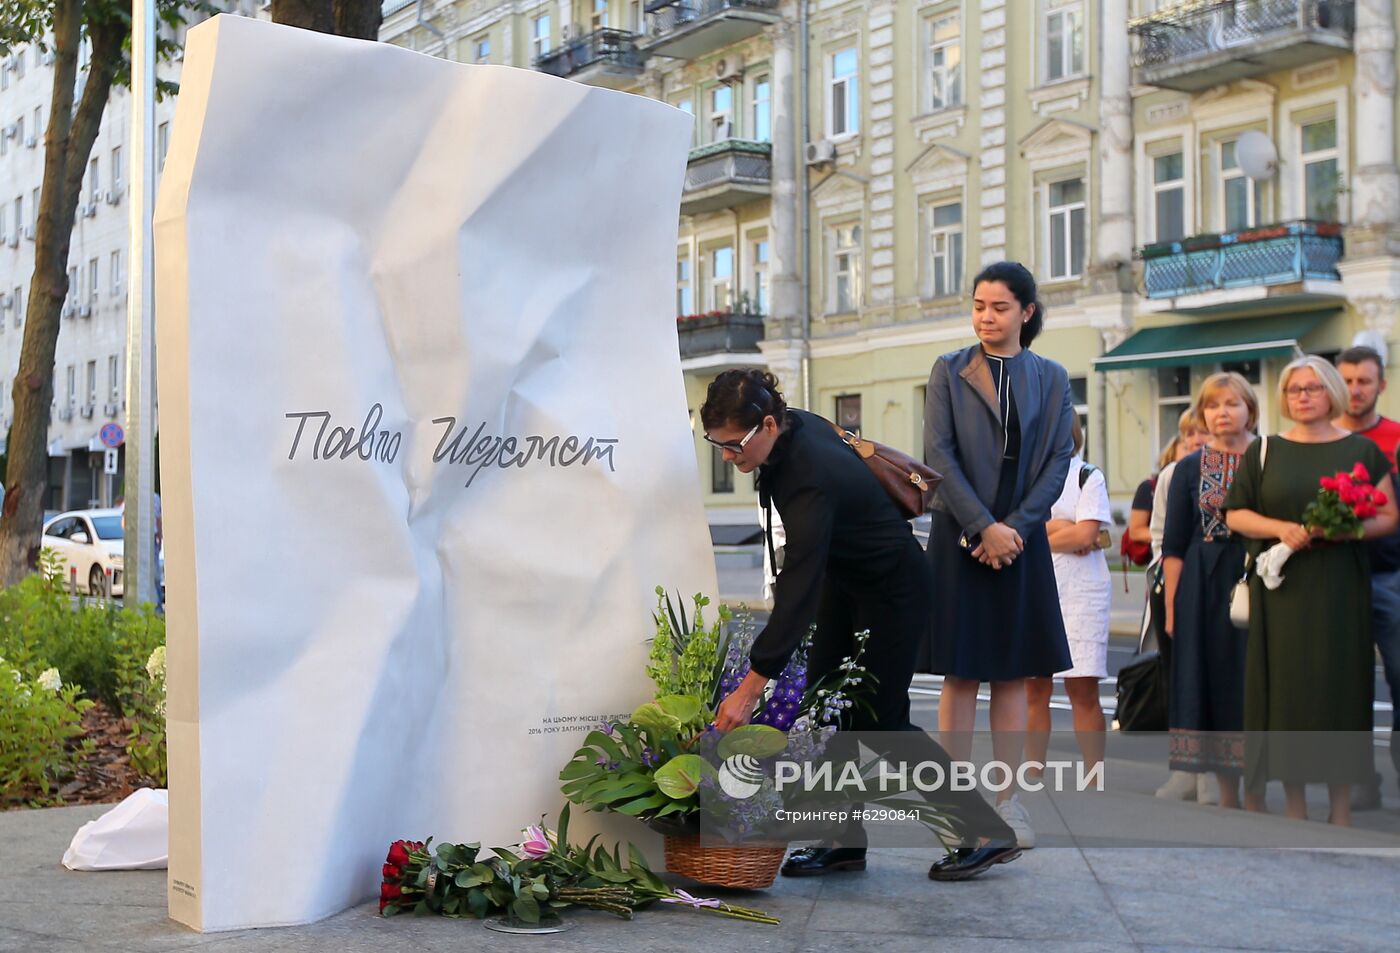 Открытие мемориала в честь убитого журналиста П. Шеремета